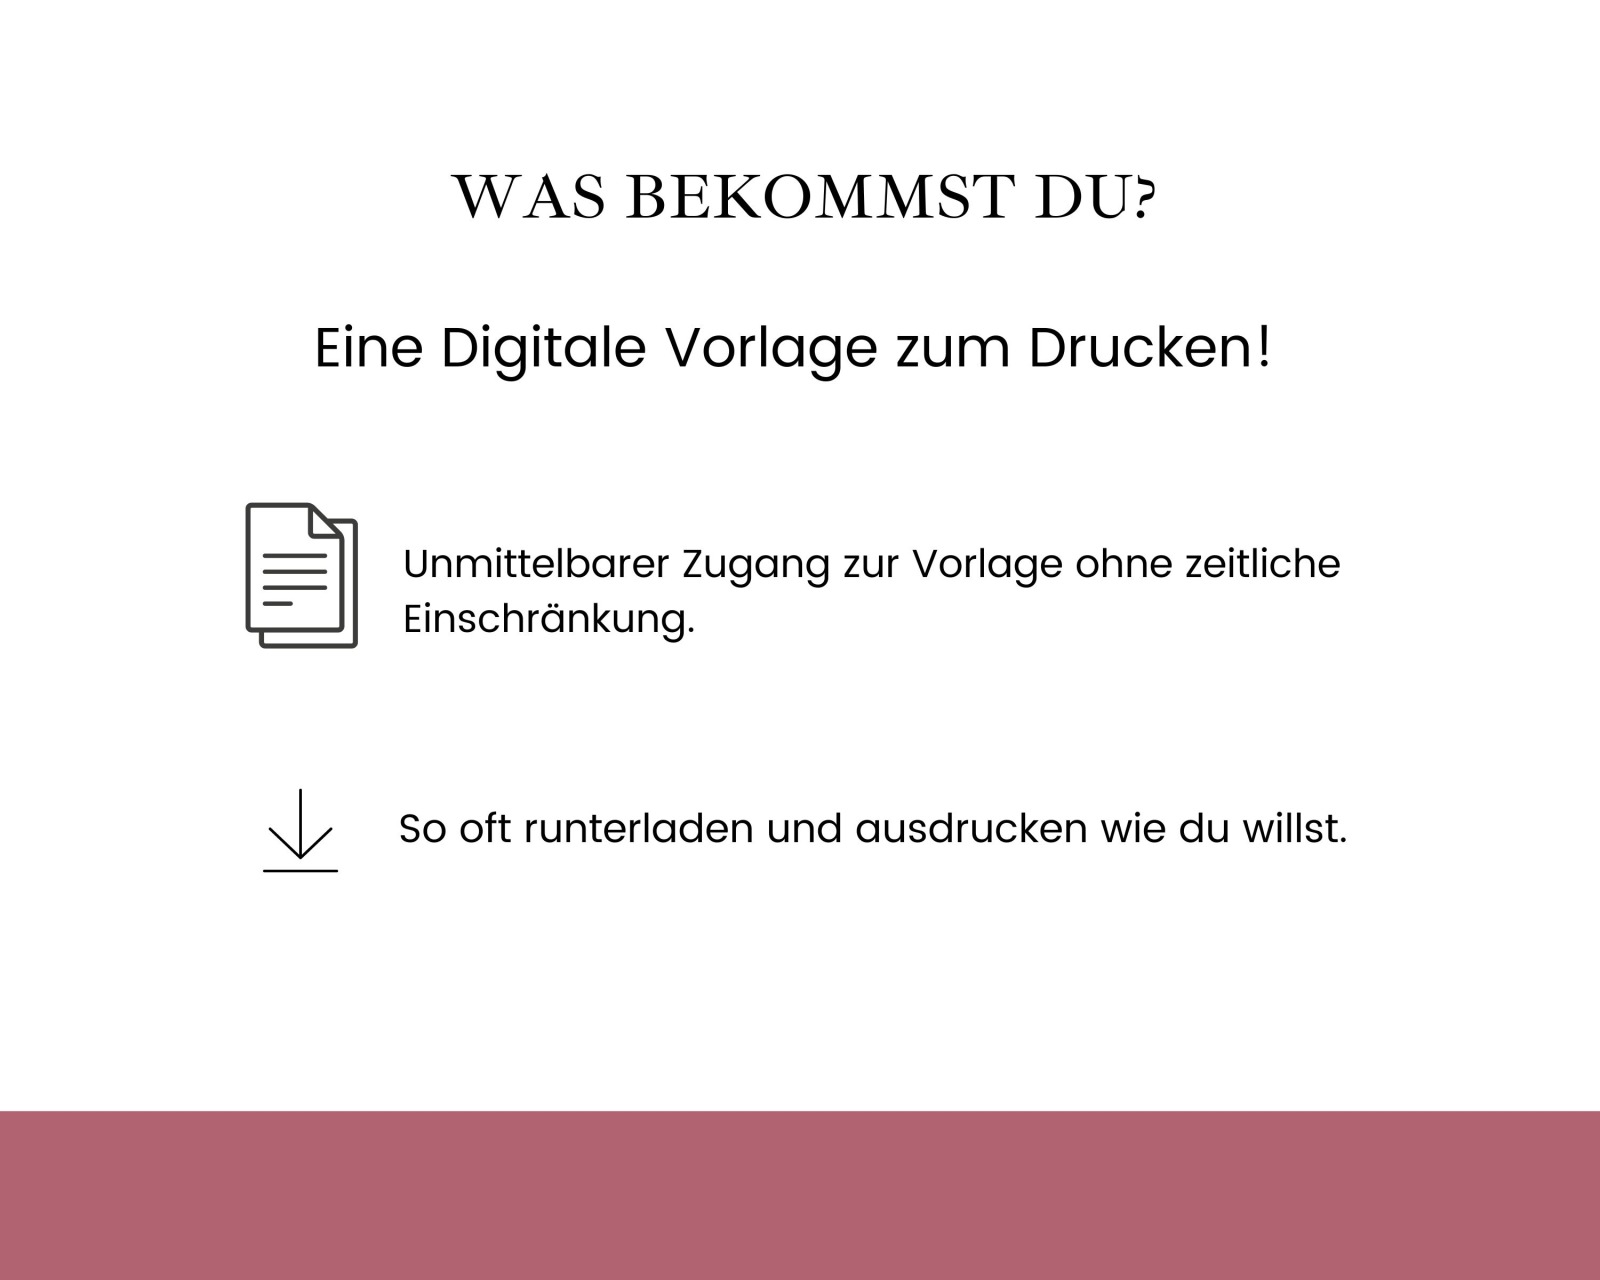 Handyfreie Trauung Digitaldruck - PDF zum selbst drucken - Digitaler Download für ein